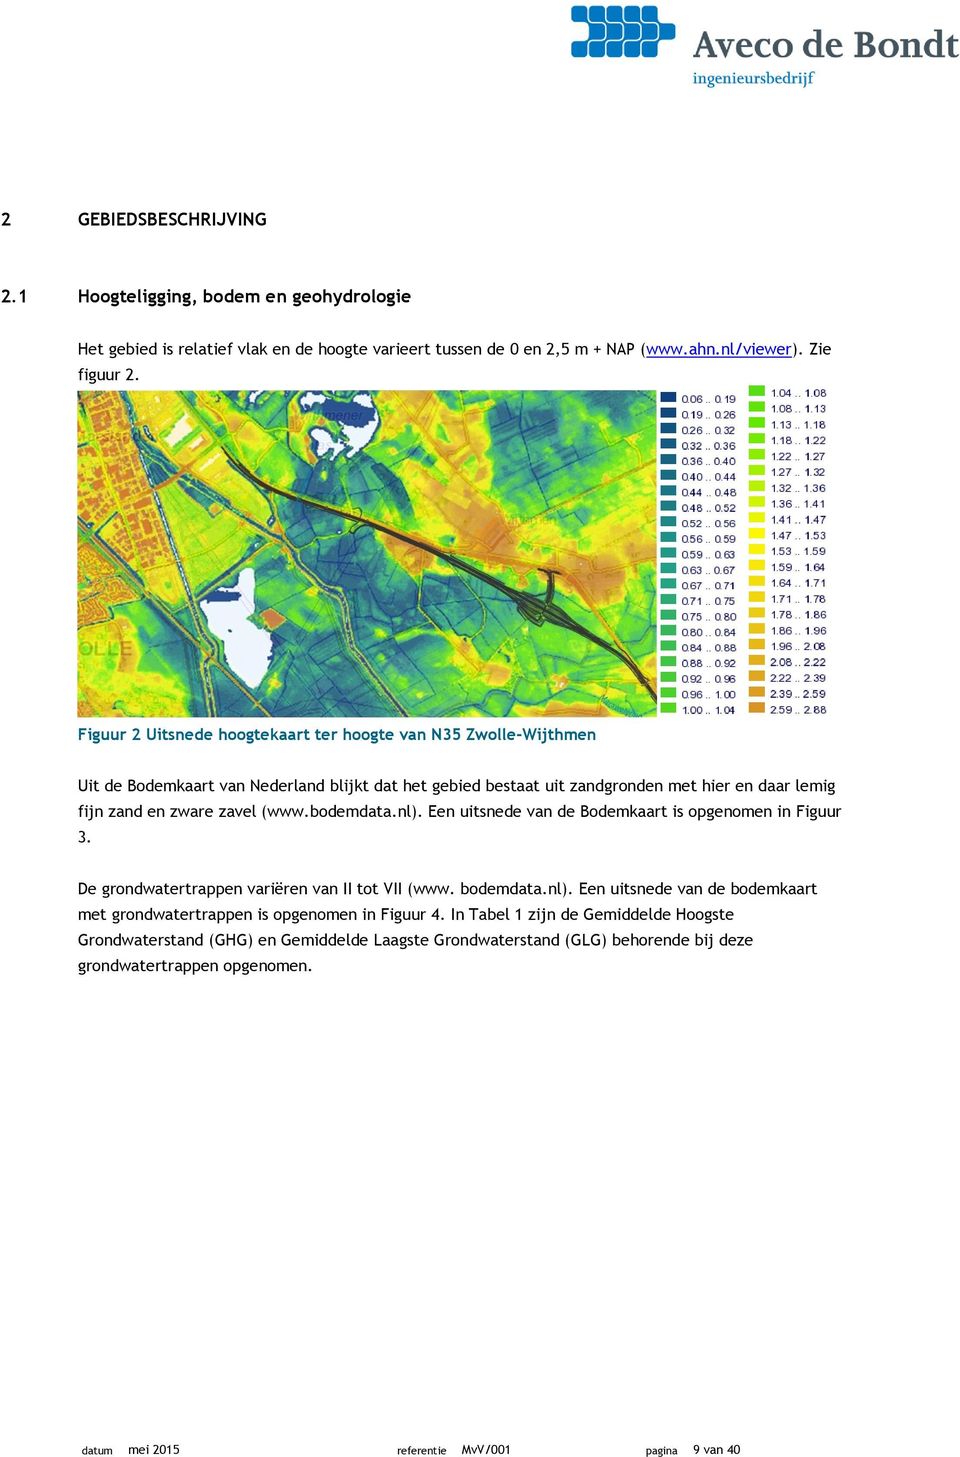 bodemdata.nl). Een uitsnede van de Bodemkaart is opgenomen in Figuur 3. De grondwatertrappen variëren van II tot VII (www. bodemdata.nl). Een uitsnede van de bodemkaart met grondwatertrappen is opgenomen in Figuur 4.